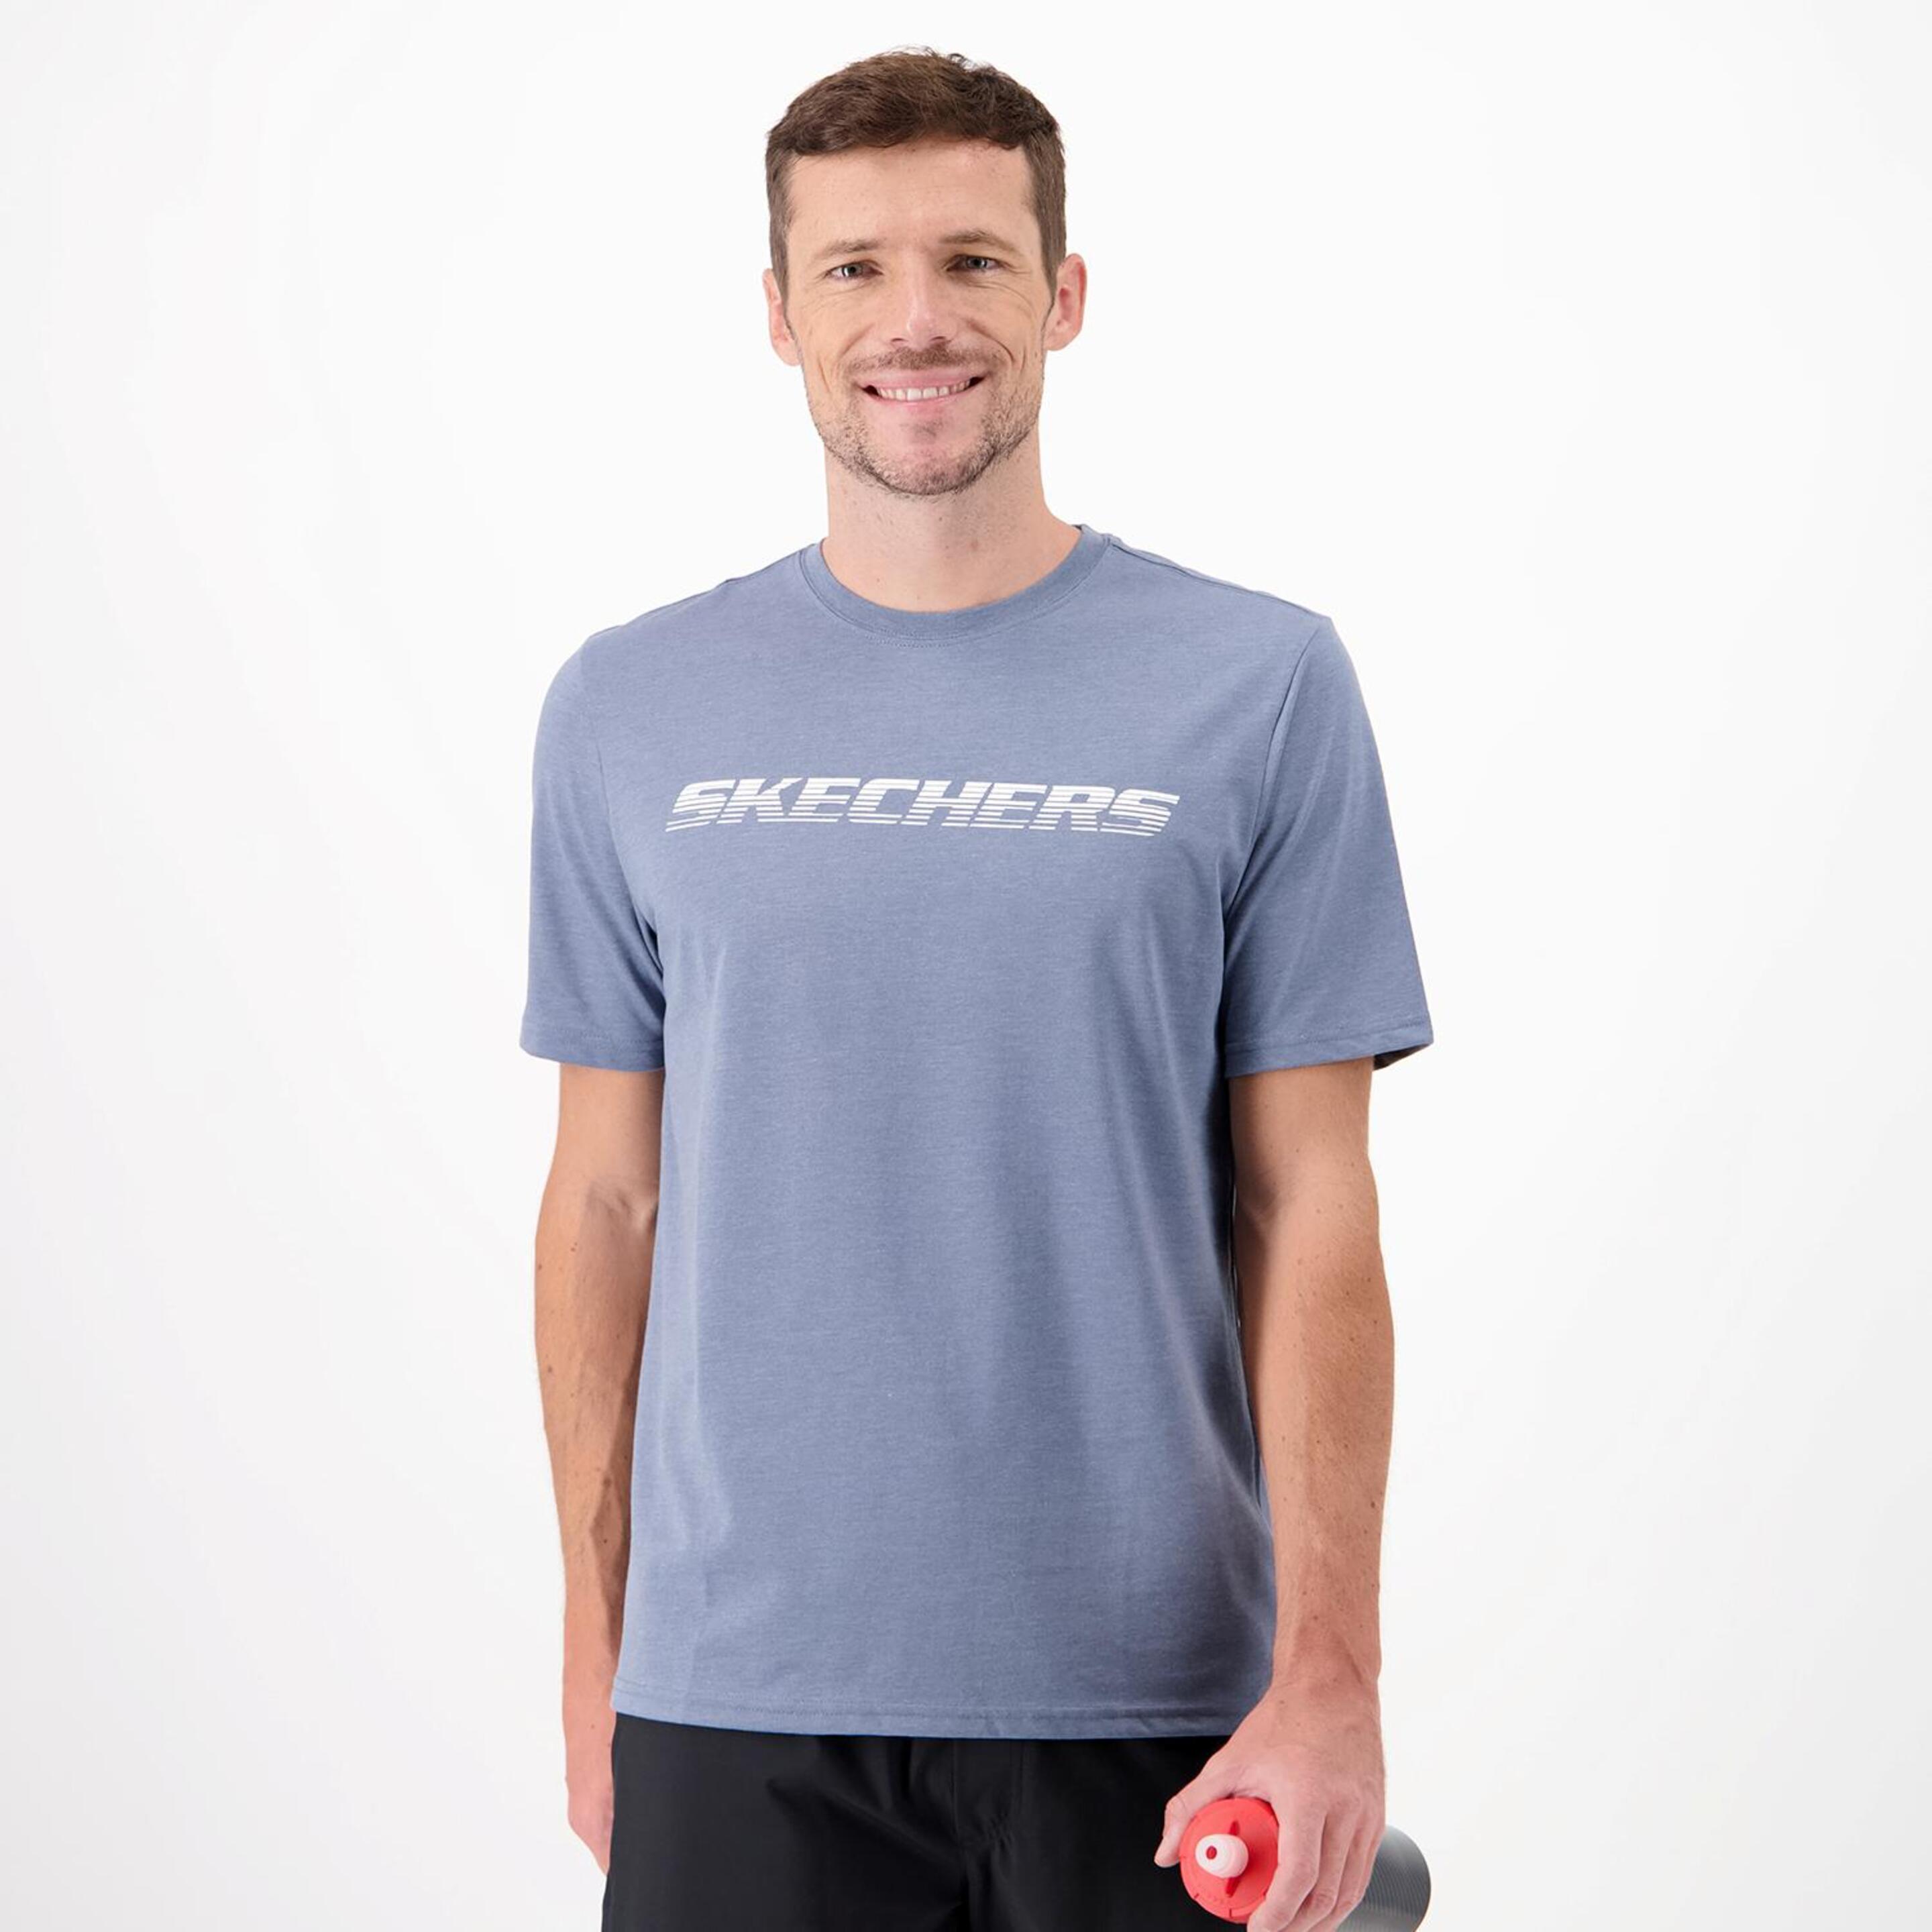 Skechers Motion - azul - T-shirt Running Homem